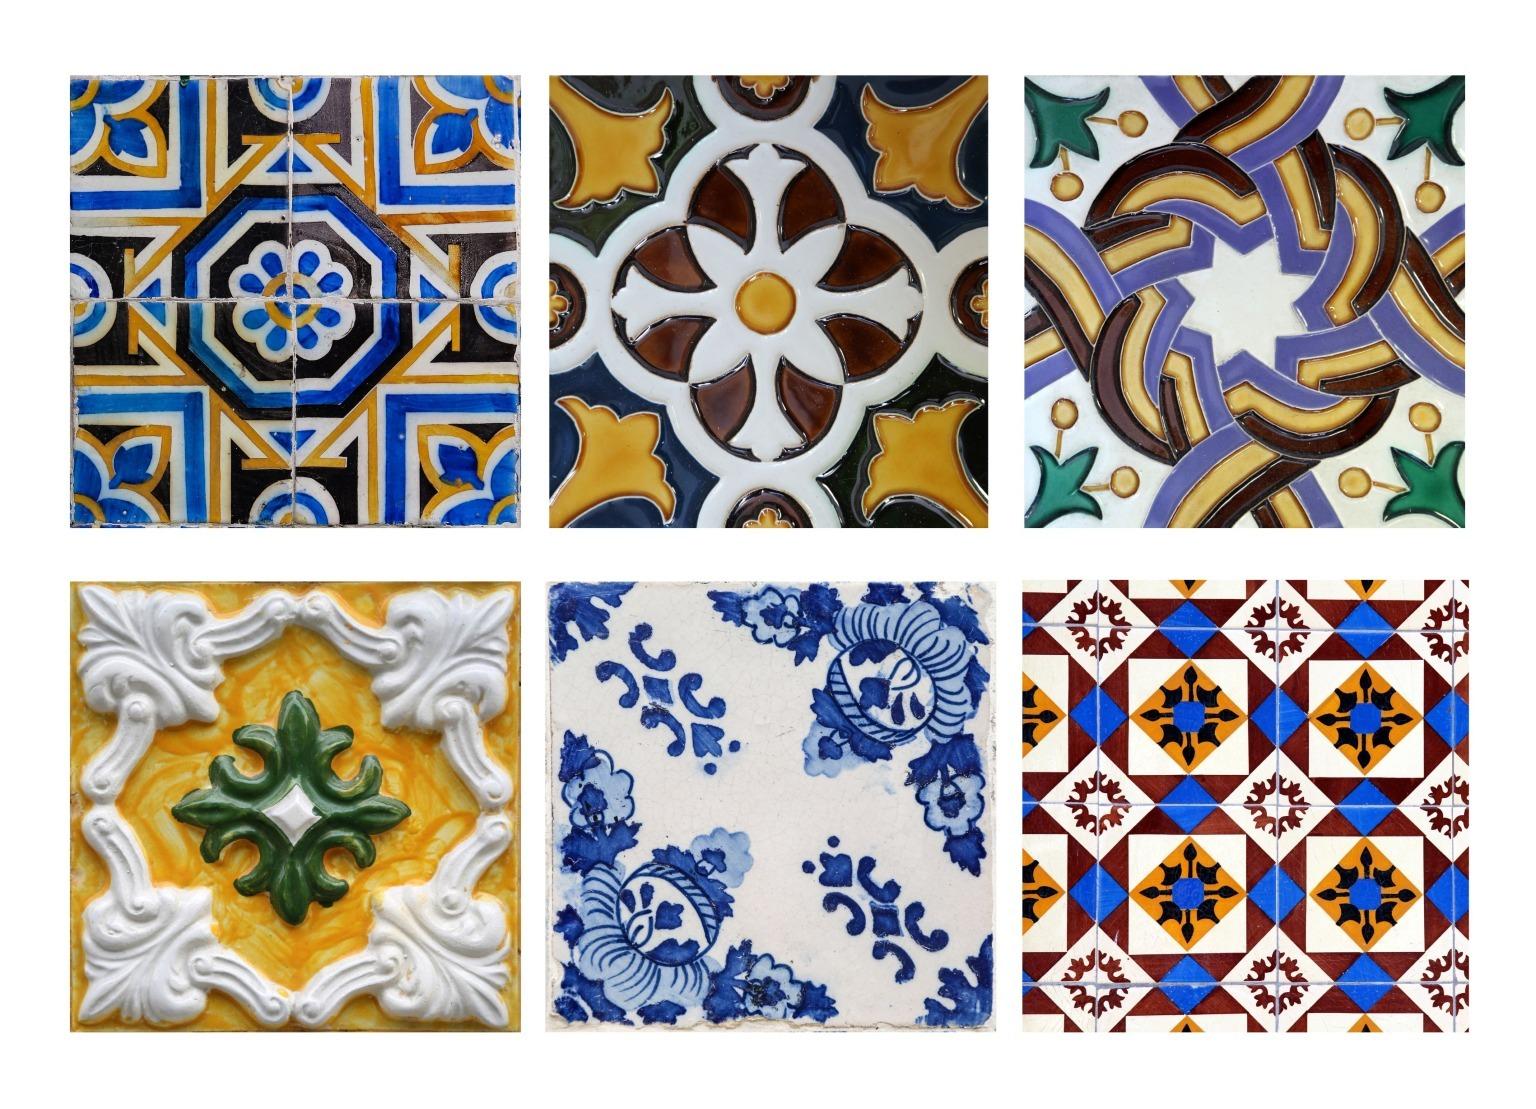 Um conjunto colorido de azulejos portugueses, com desenhos intrincados e património cultural.